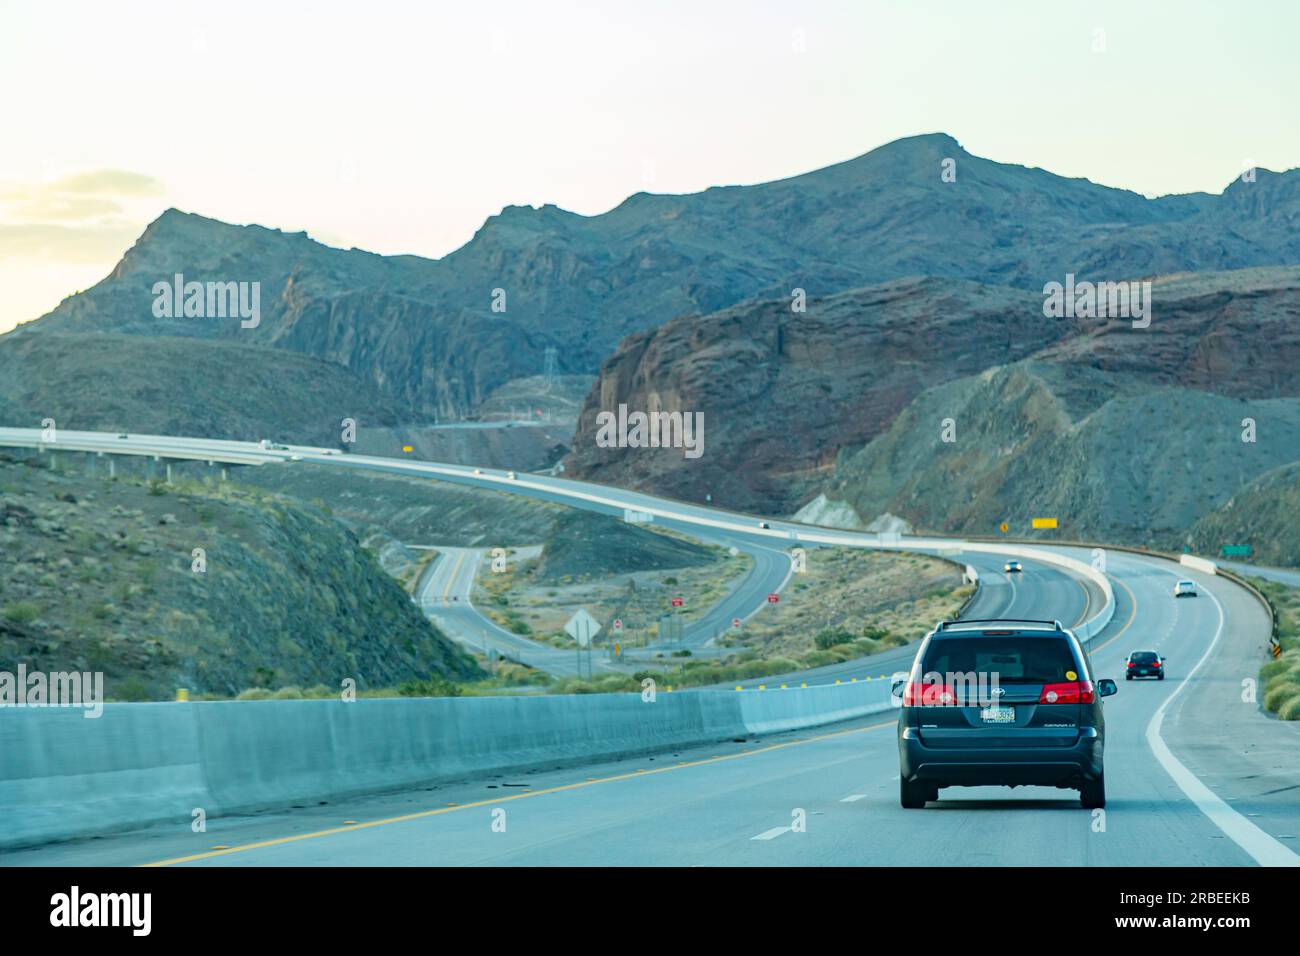 Hoover Dam, Nevada, USA - aprile 2017 - autostrada americana con automobili. La strada si estende in lontananza sullo sfondo di montagne. Guida in auto lungo l'autostrada, vista posteriore Foto Stock